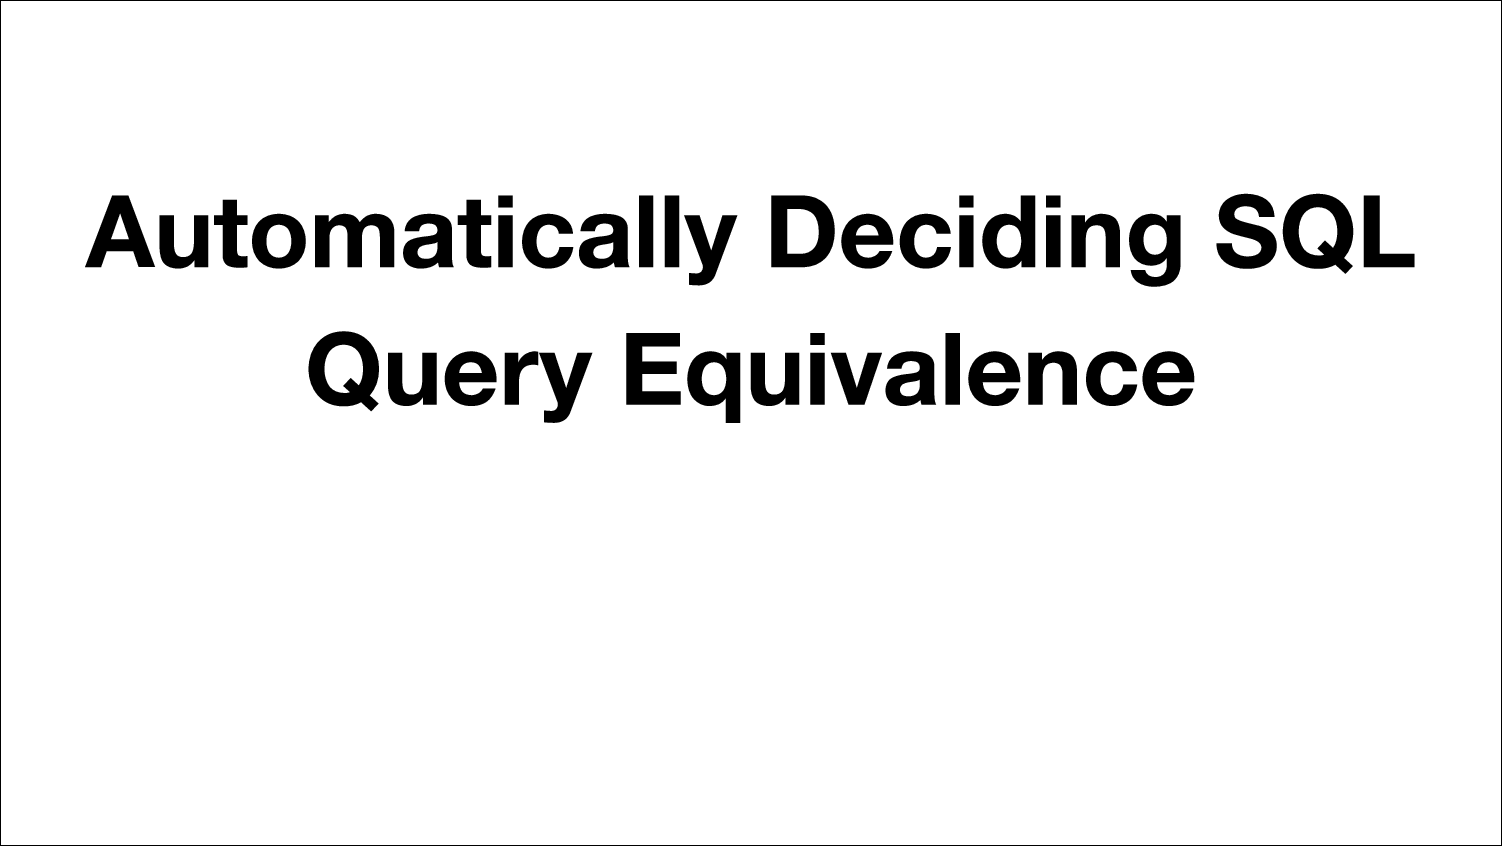 [PRESENTATION] Query Equivalence